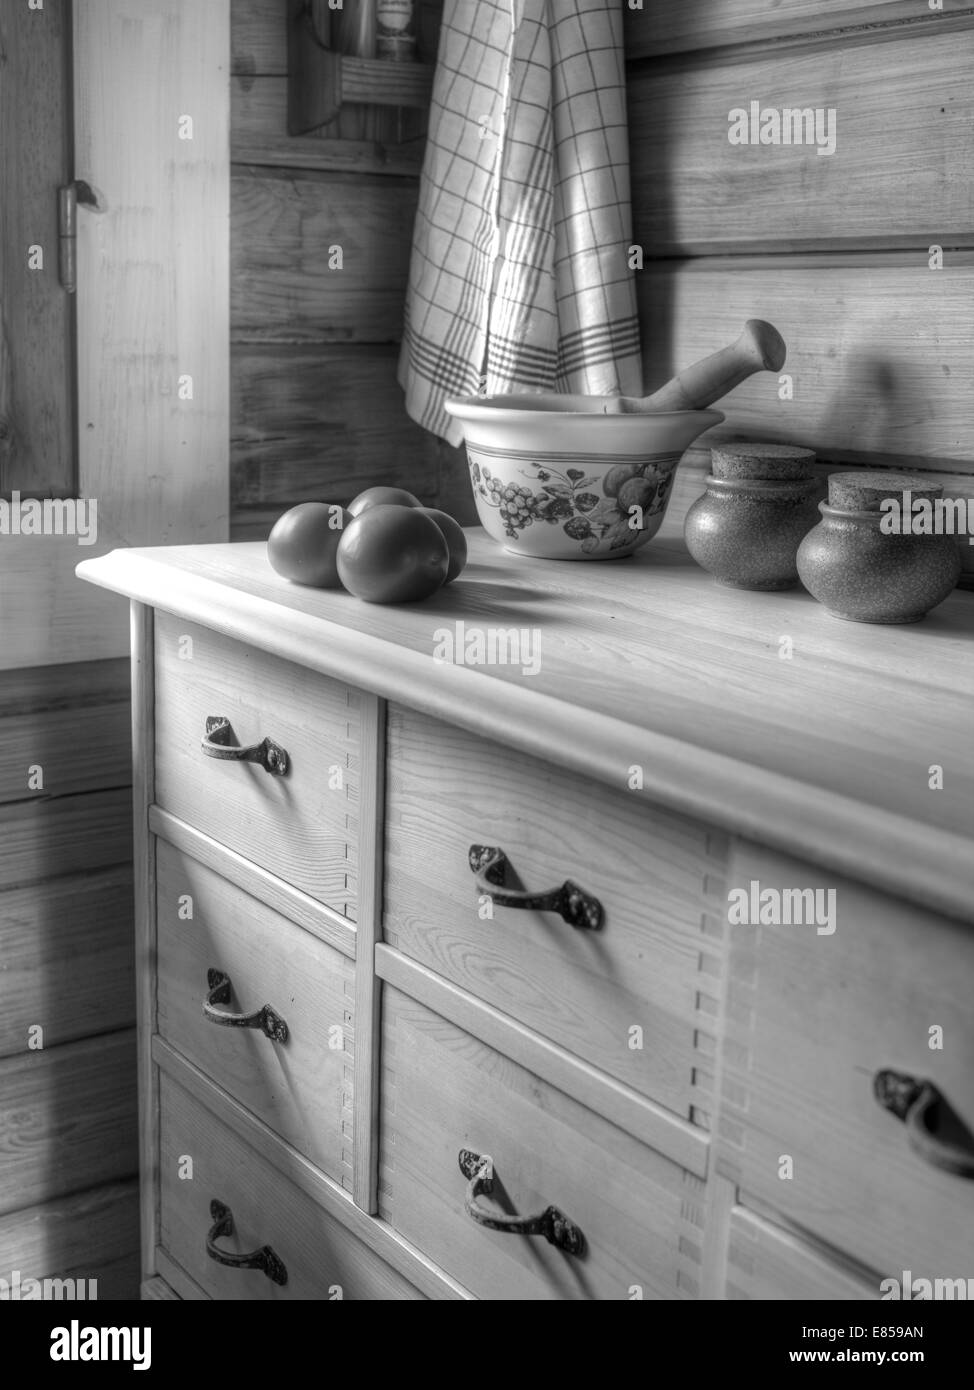 La cuisine à l'intérieur d'un chalet en bois, les tomates sur la table, image en noir et blanc Banque D'Images